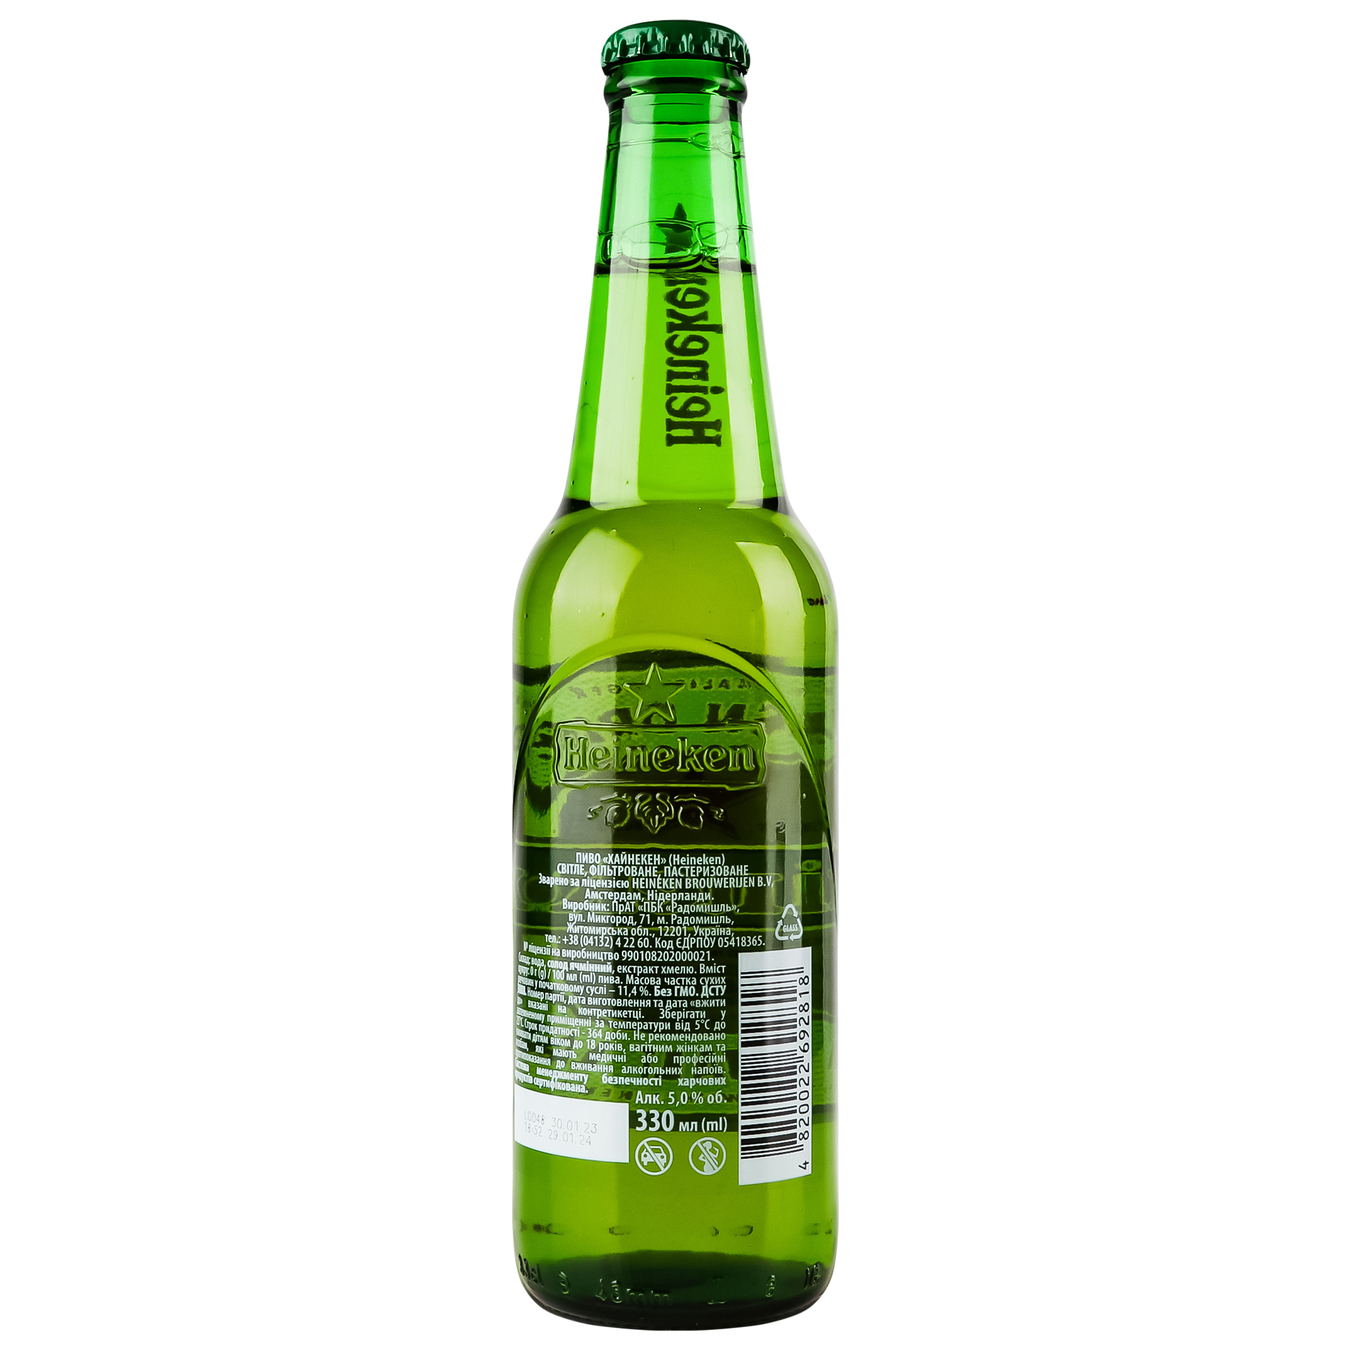 Heineken light filtered pasteurized beer 5% 0,33l 2